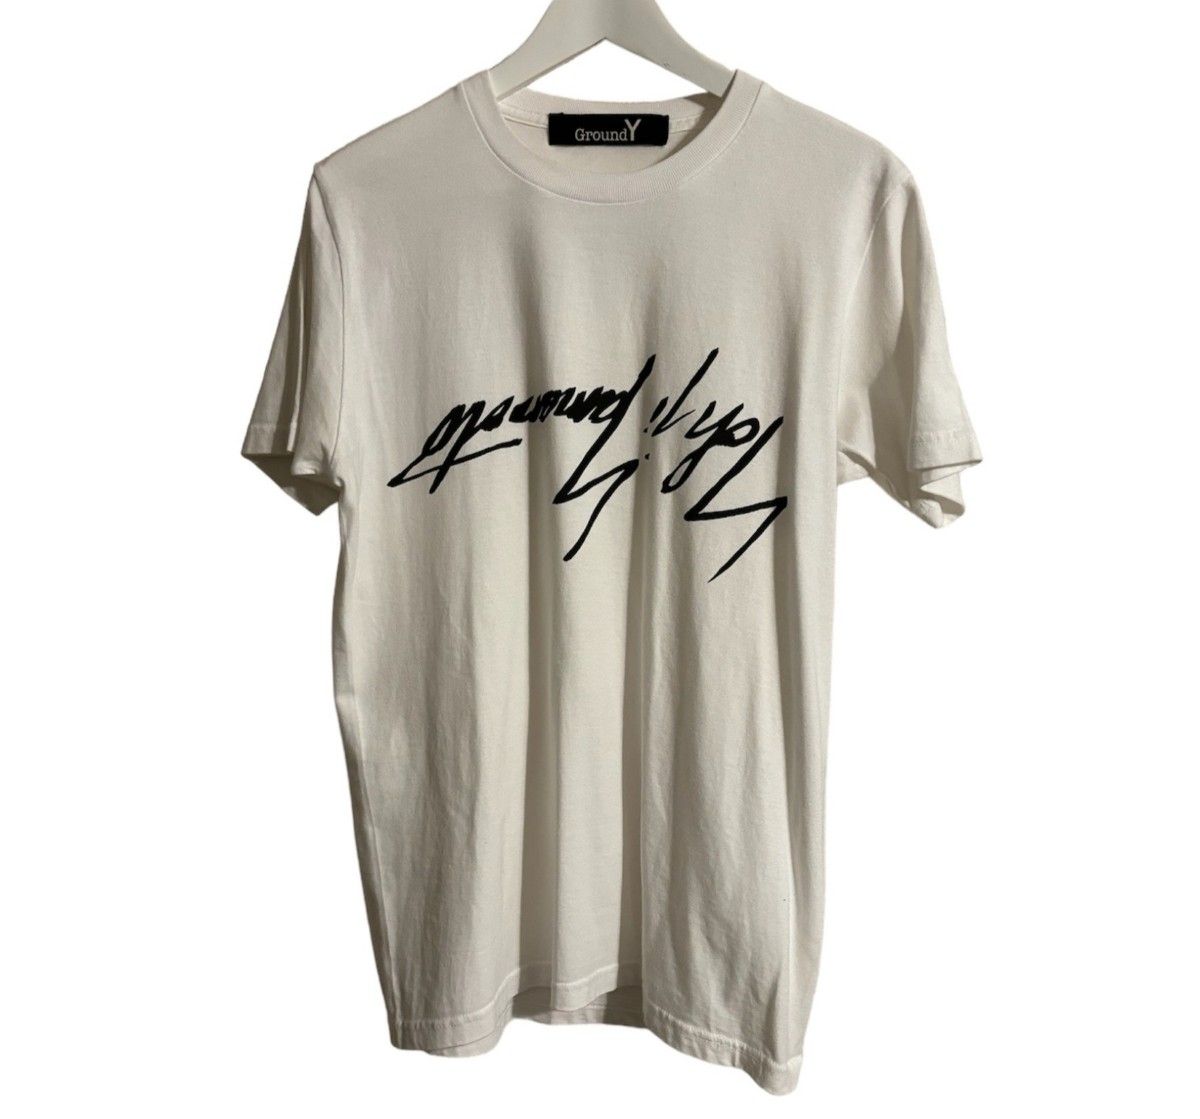 グランドワイ GroundY　フロント Yohji  Yamamoto ロゴプリントTシャツColor ホワイトsize3